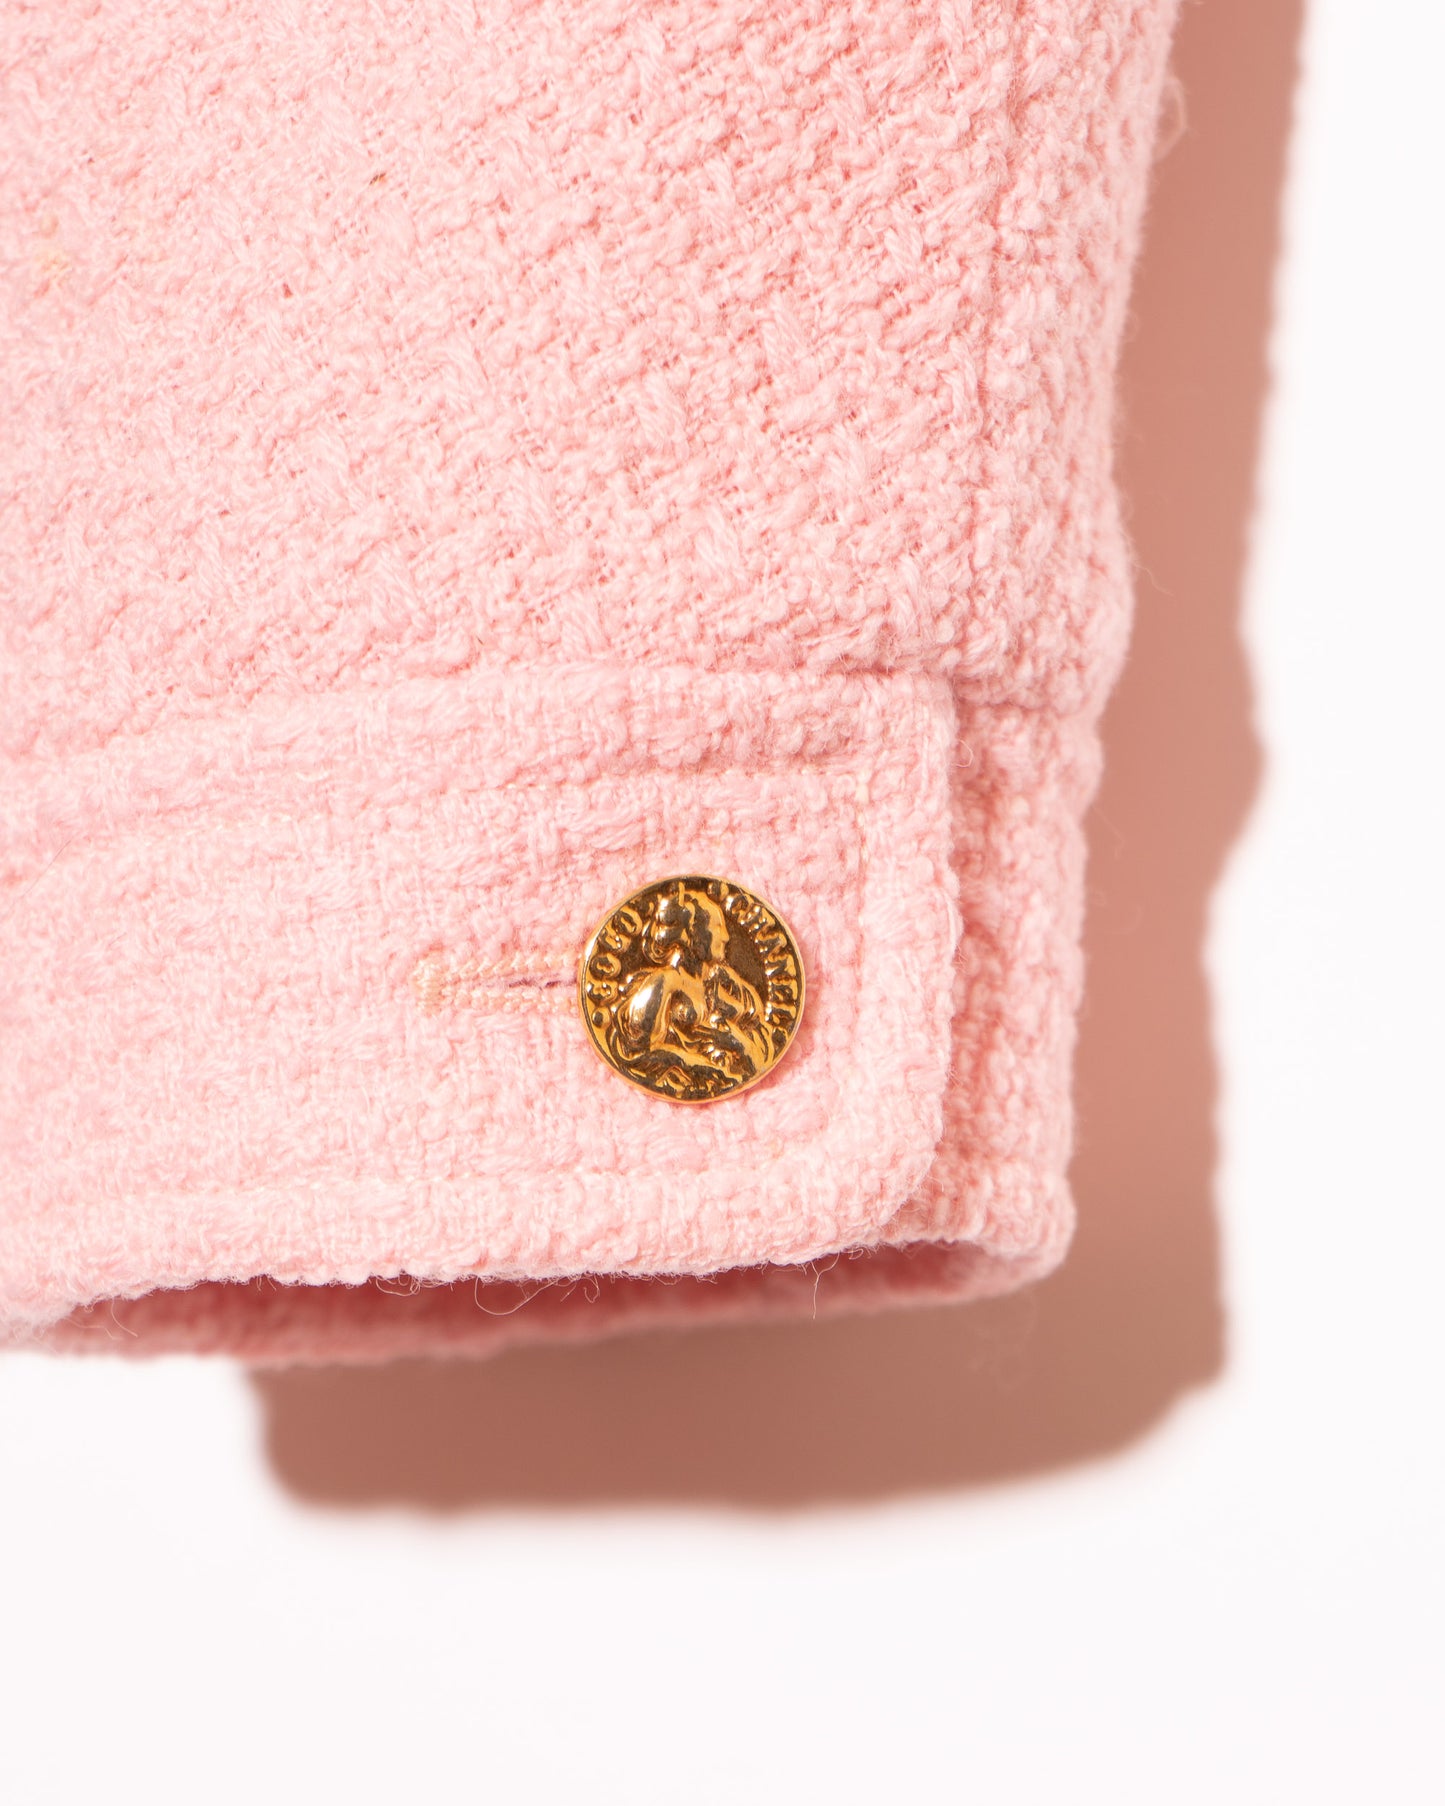 FR36-38 Rare Chanel Spring 1988 Collarless Two Pocket Pink Wool Tweed Jacket